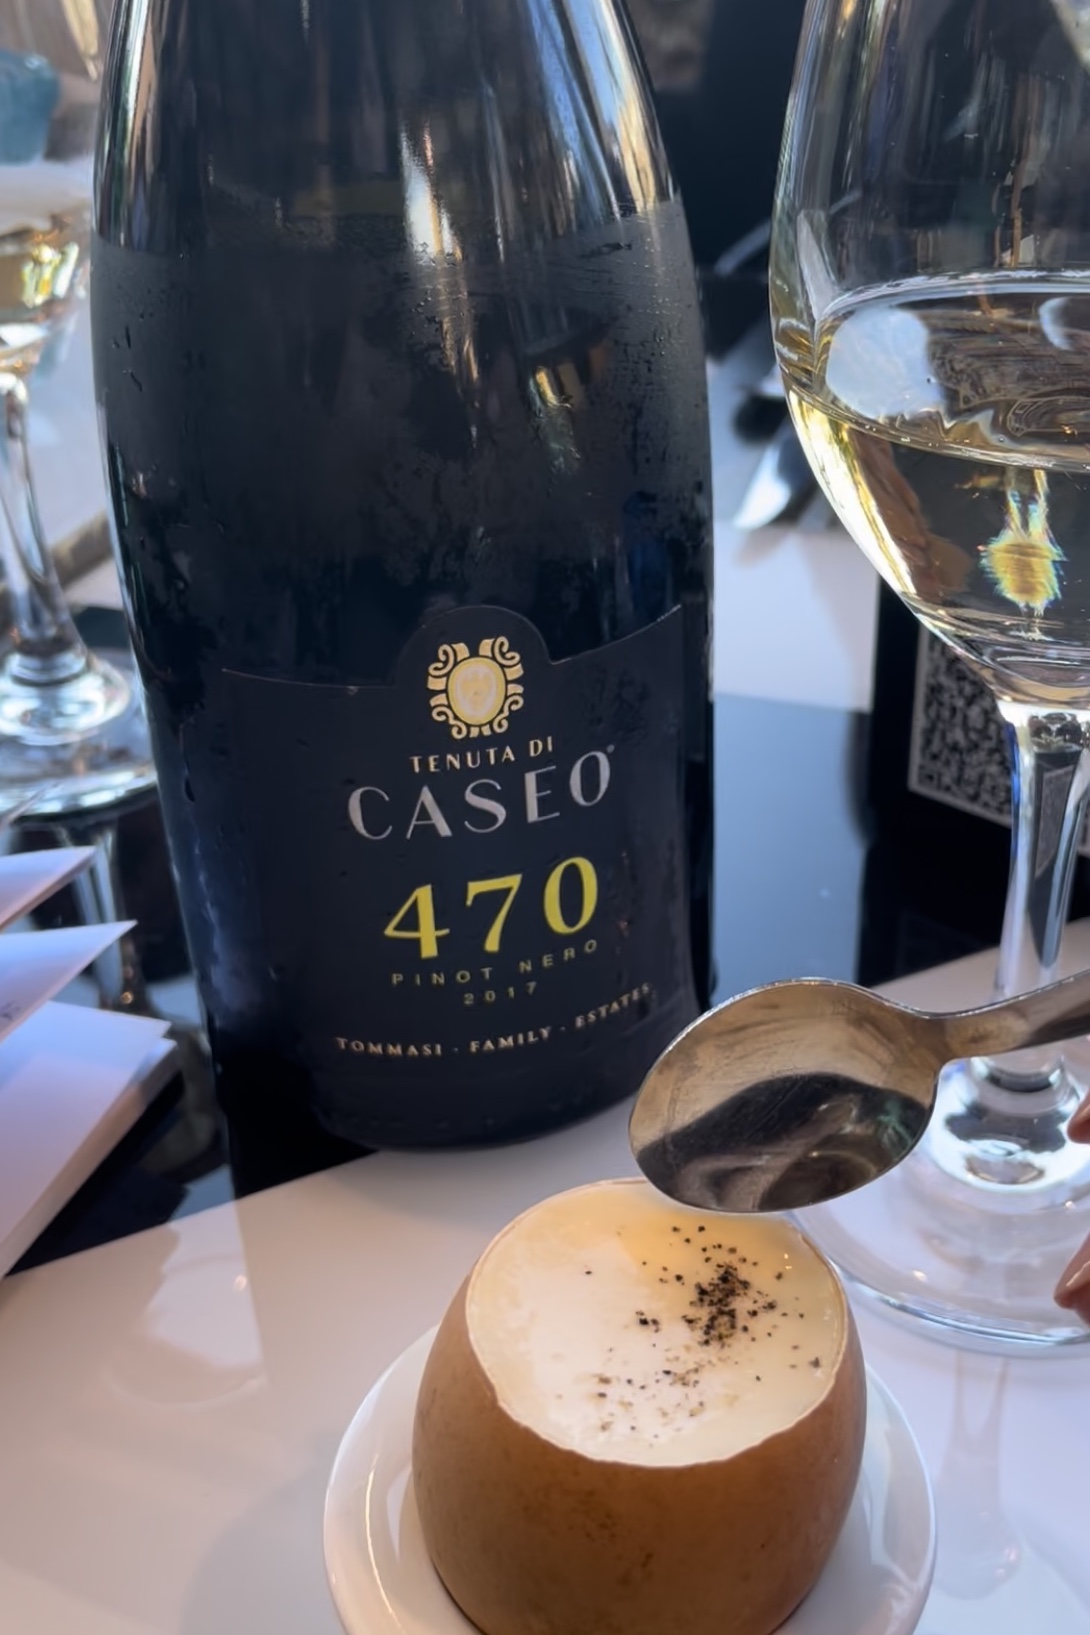 Tenuta Caseo 470 Pinot Nero 2017